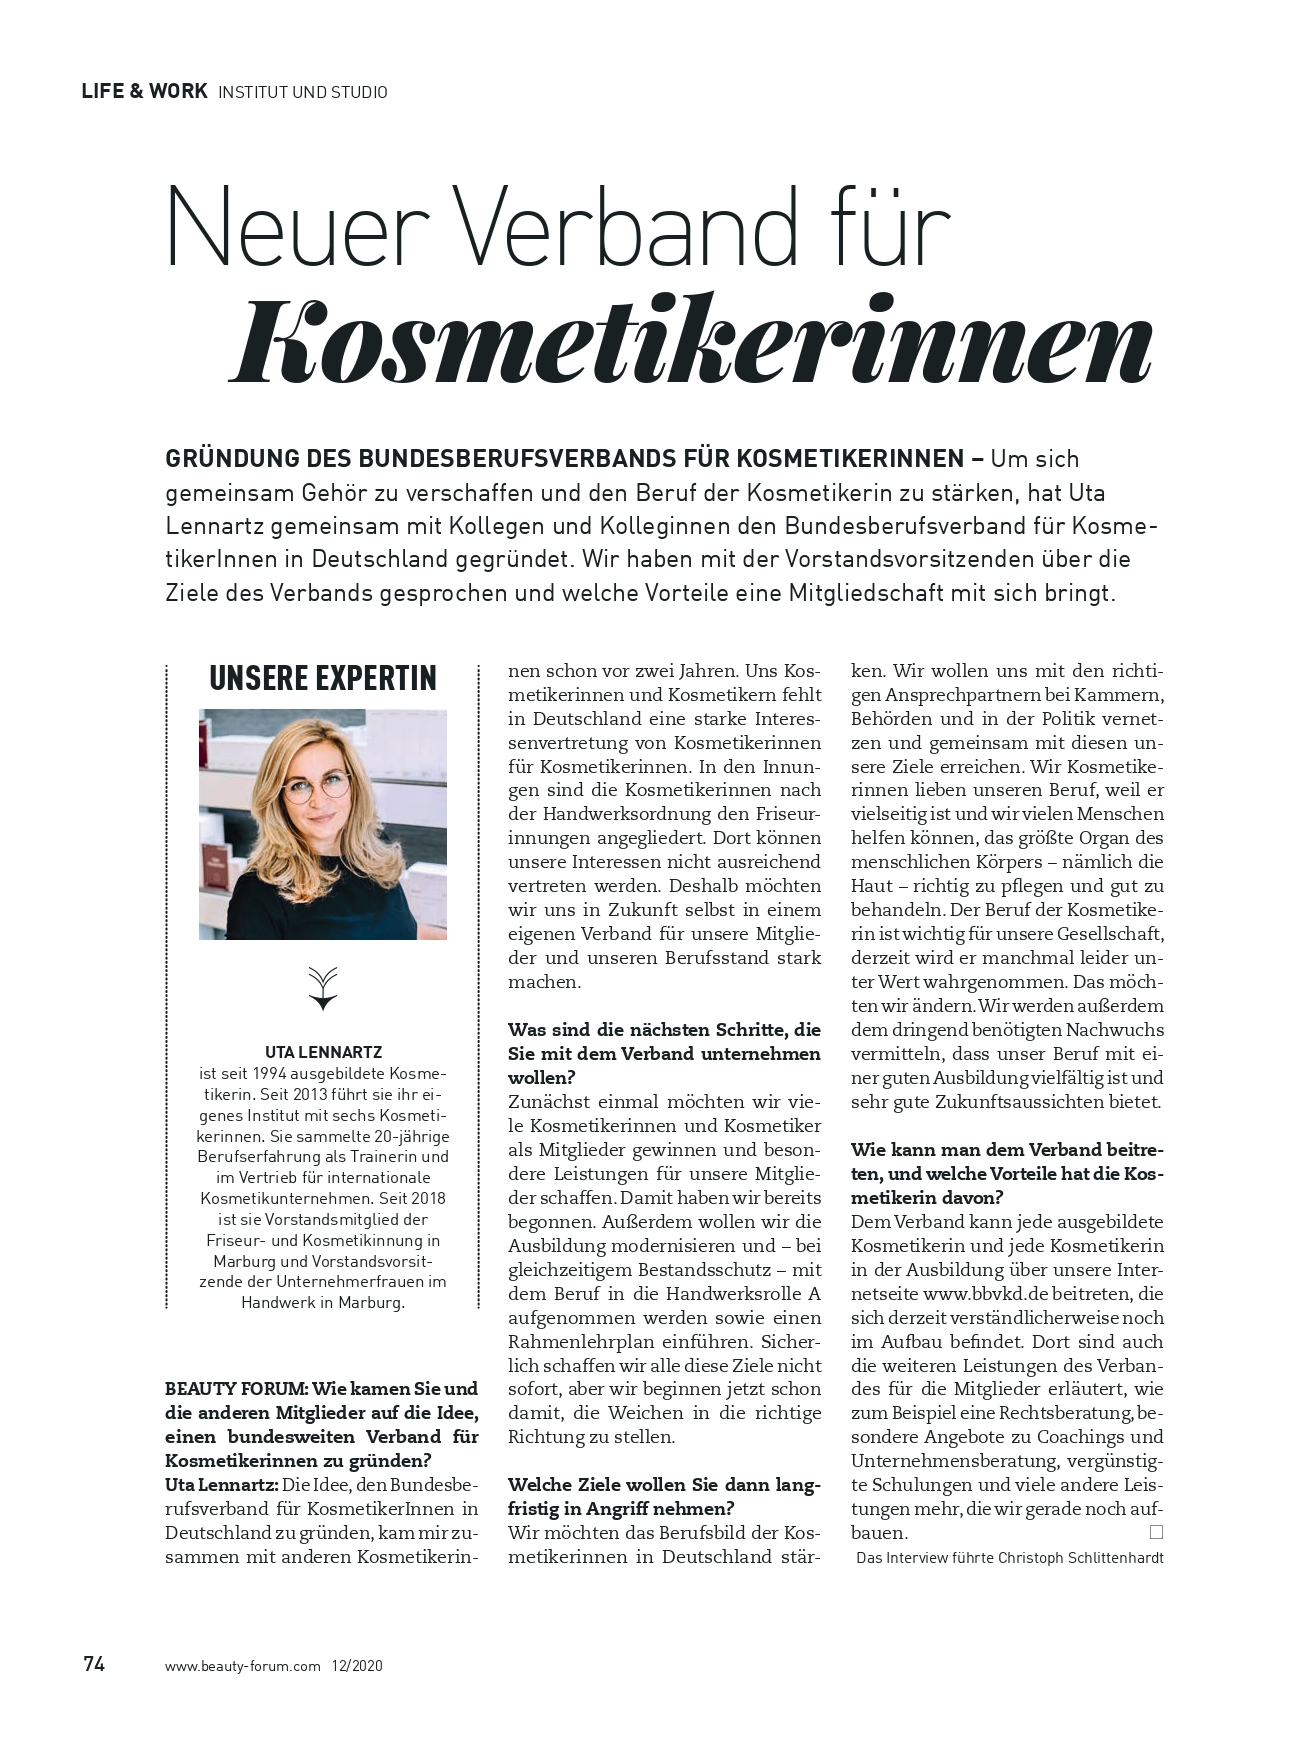 Featured image for “BEAUTY FORUM Ausgabe 12/2020, “Neuer Verband für Kosmetikerinnen”, Dezember”